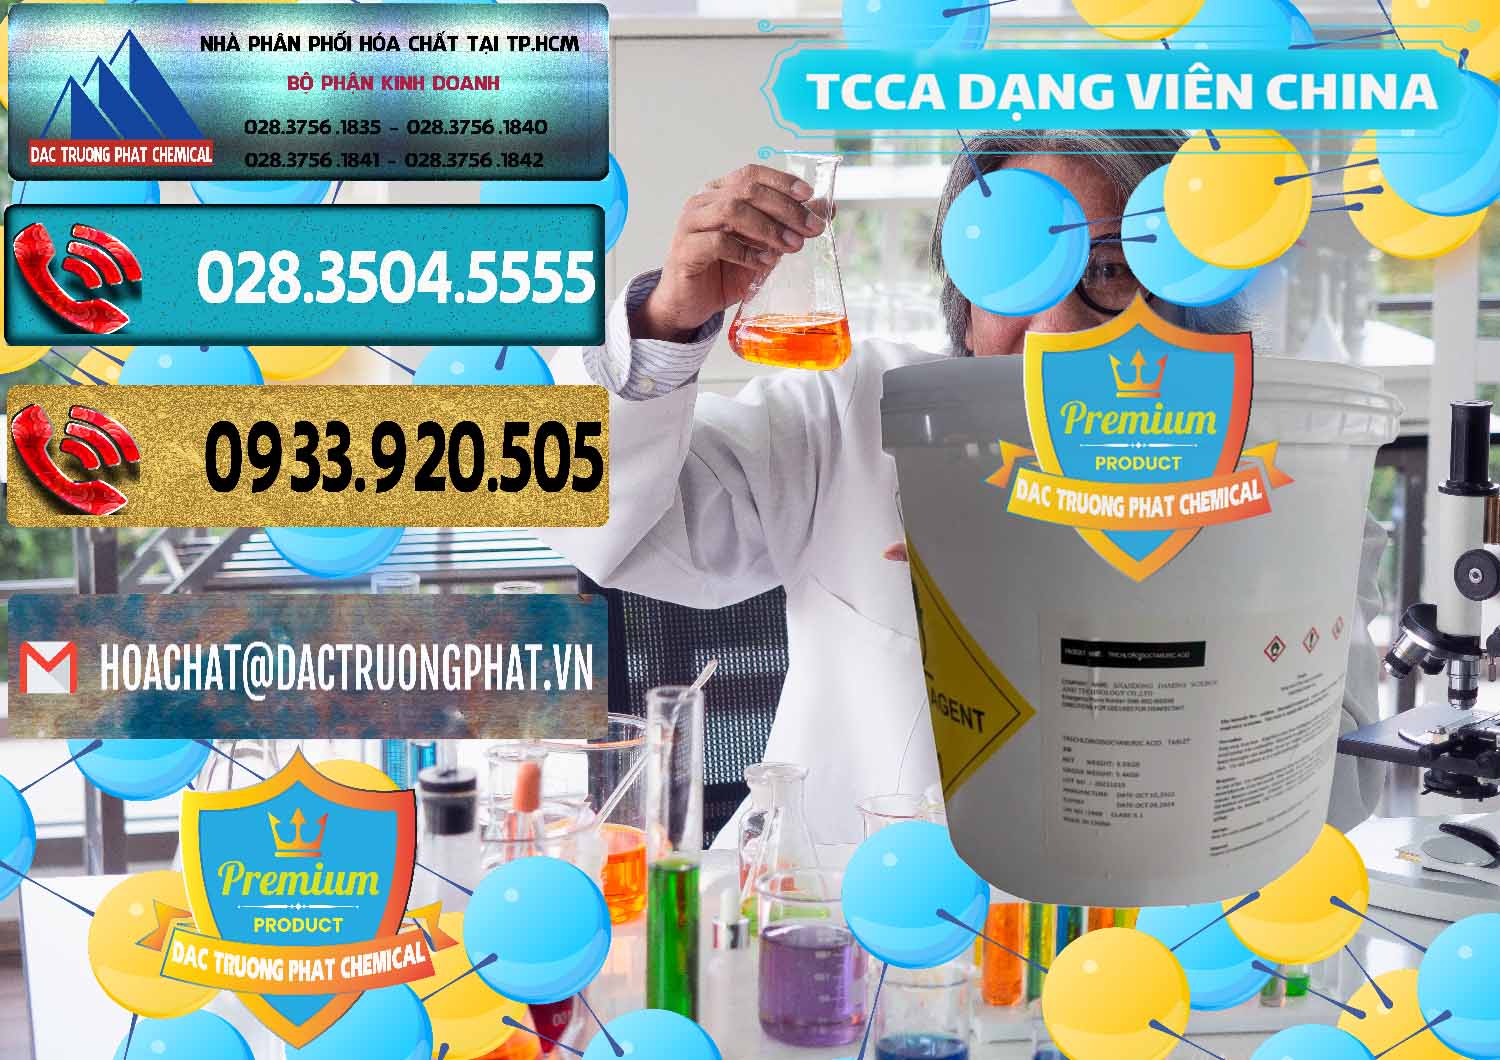 Nơi bán - cung ứng TCCA - Acid Trichloroisocyanuric Dạng Viên Thùng 5kg Trung Quốc China - 0379 - Nơi chuyên cung ứng _ phân phối hóa chất tại TP.HCM - hoachatdetnhuom.com